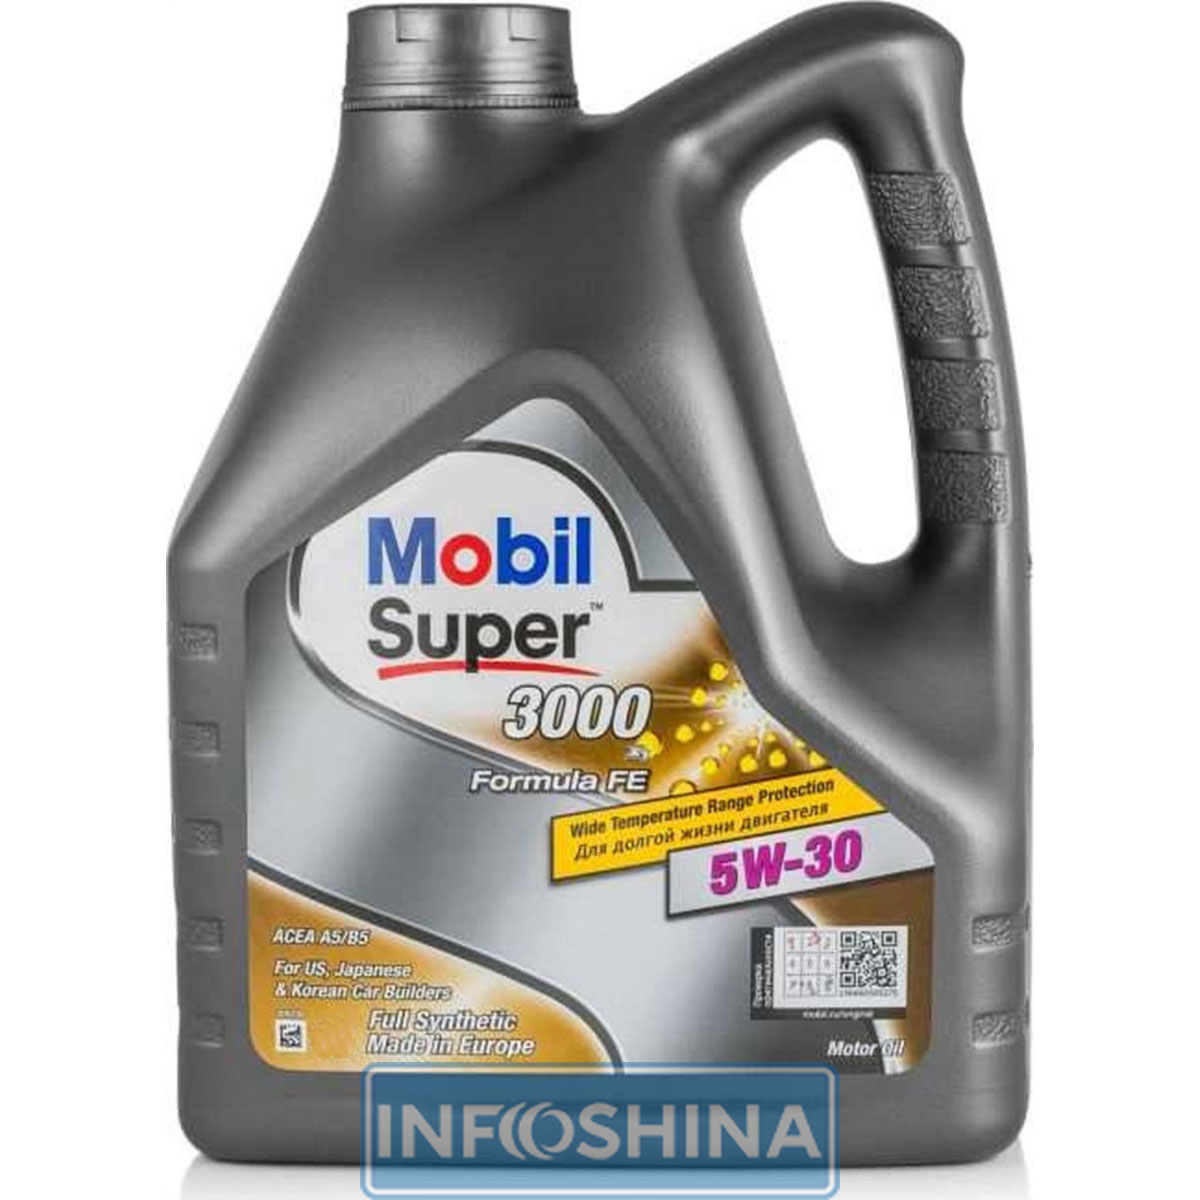 Купить масло Mobil Super 3000 x1 Formula FE 5W-30 (5л)